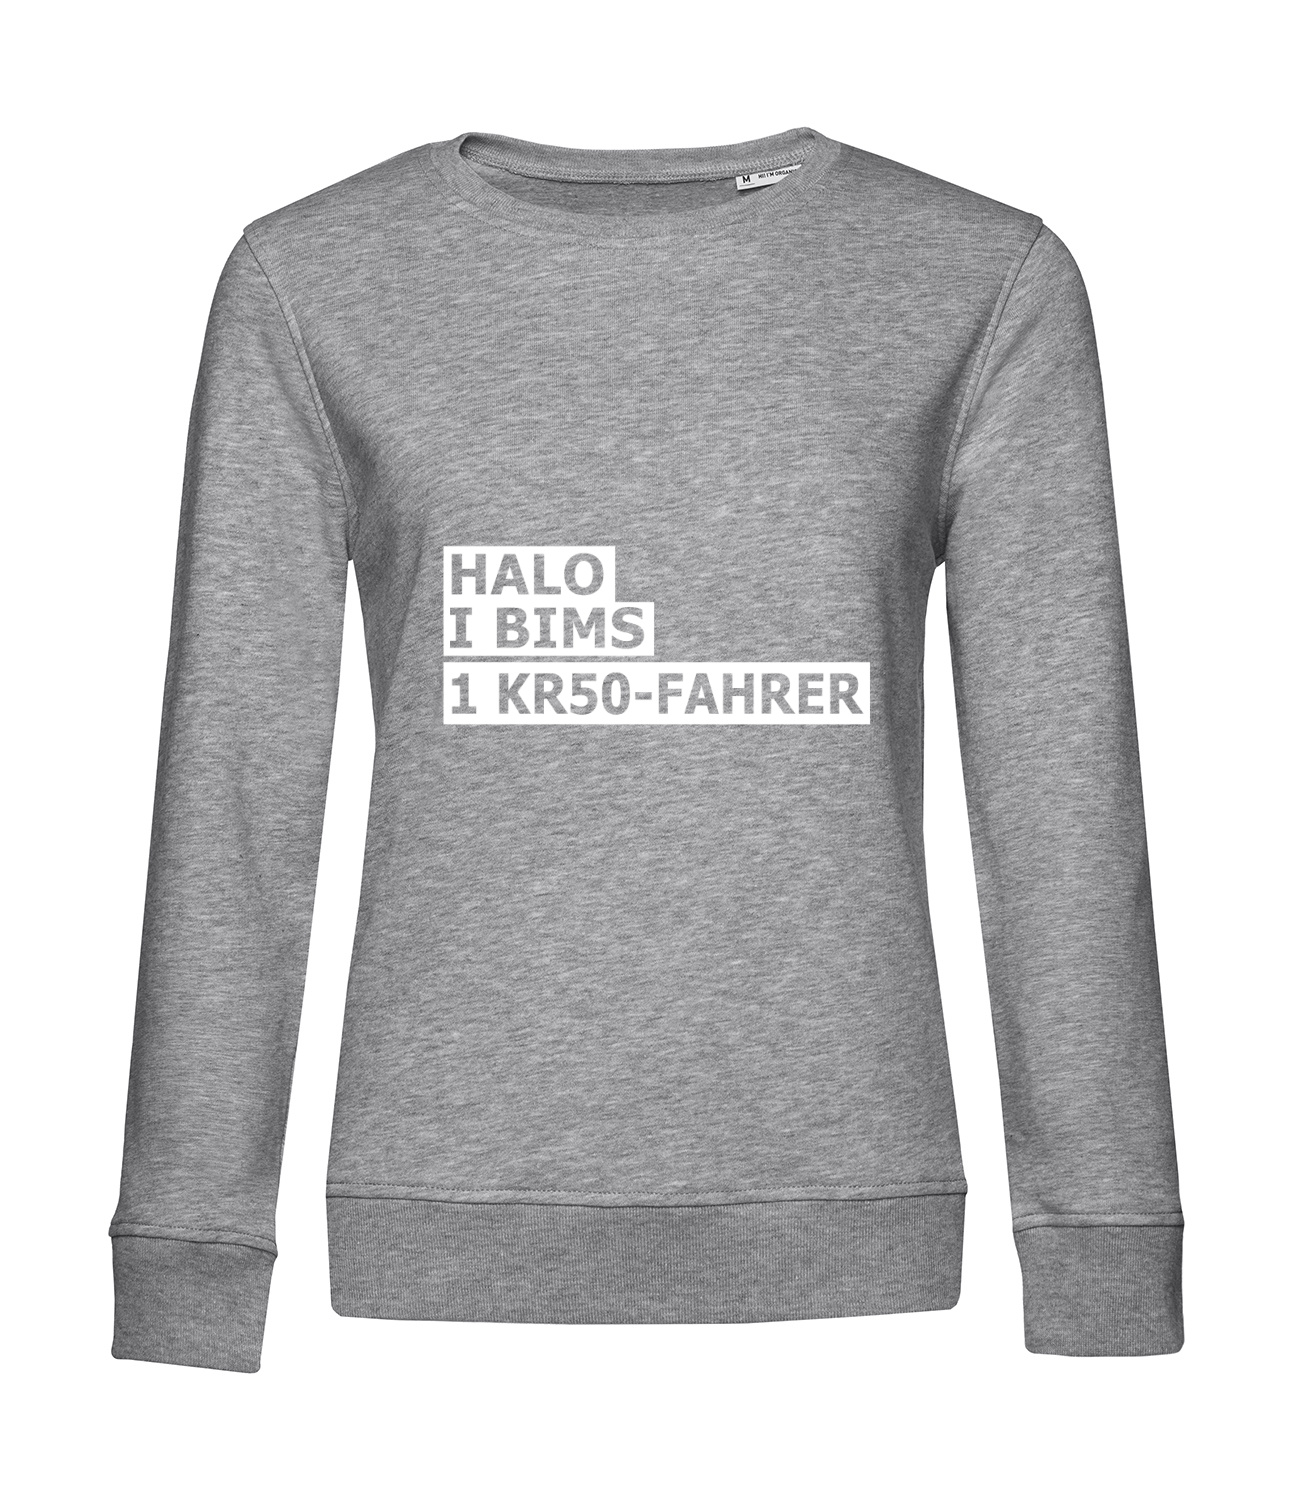 Nachhaltiges Sweatshirt Damen 2Takter - Halo I bims 1 KR50-Fahrer